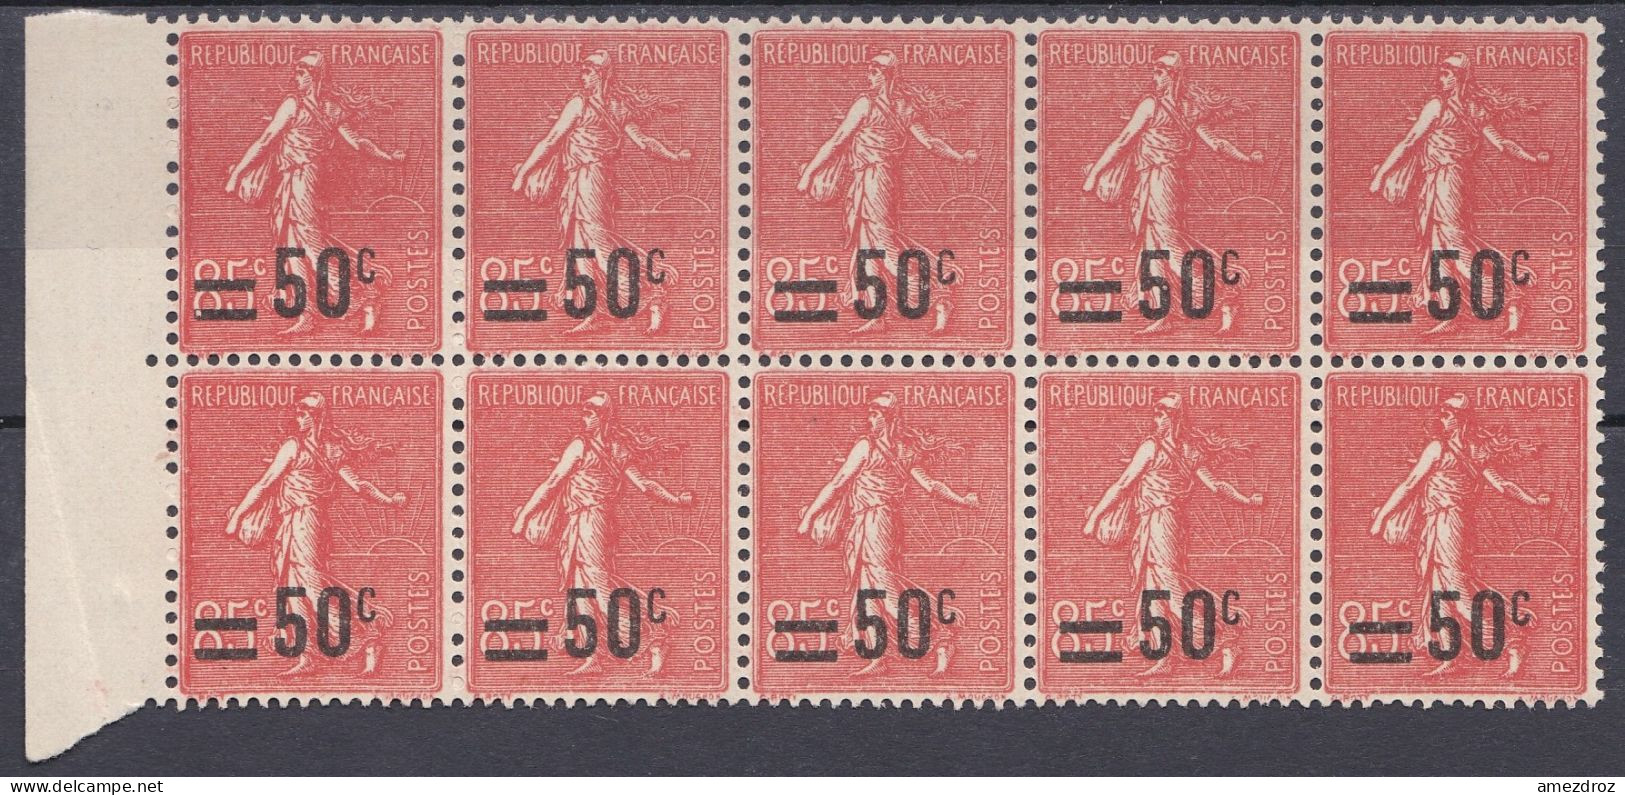 France 1926-1927 N° 221 ** Semeuse Fond Ligné Bloc De 10 Cote 70 €   (Gf) - 1903-60 Sower - Ligned